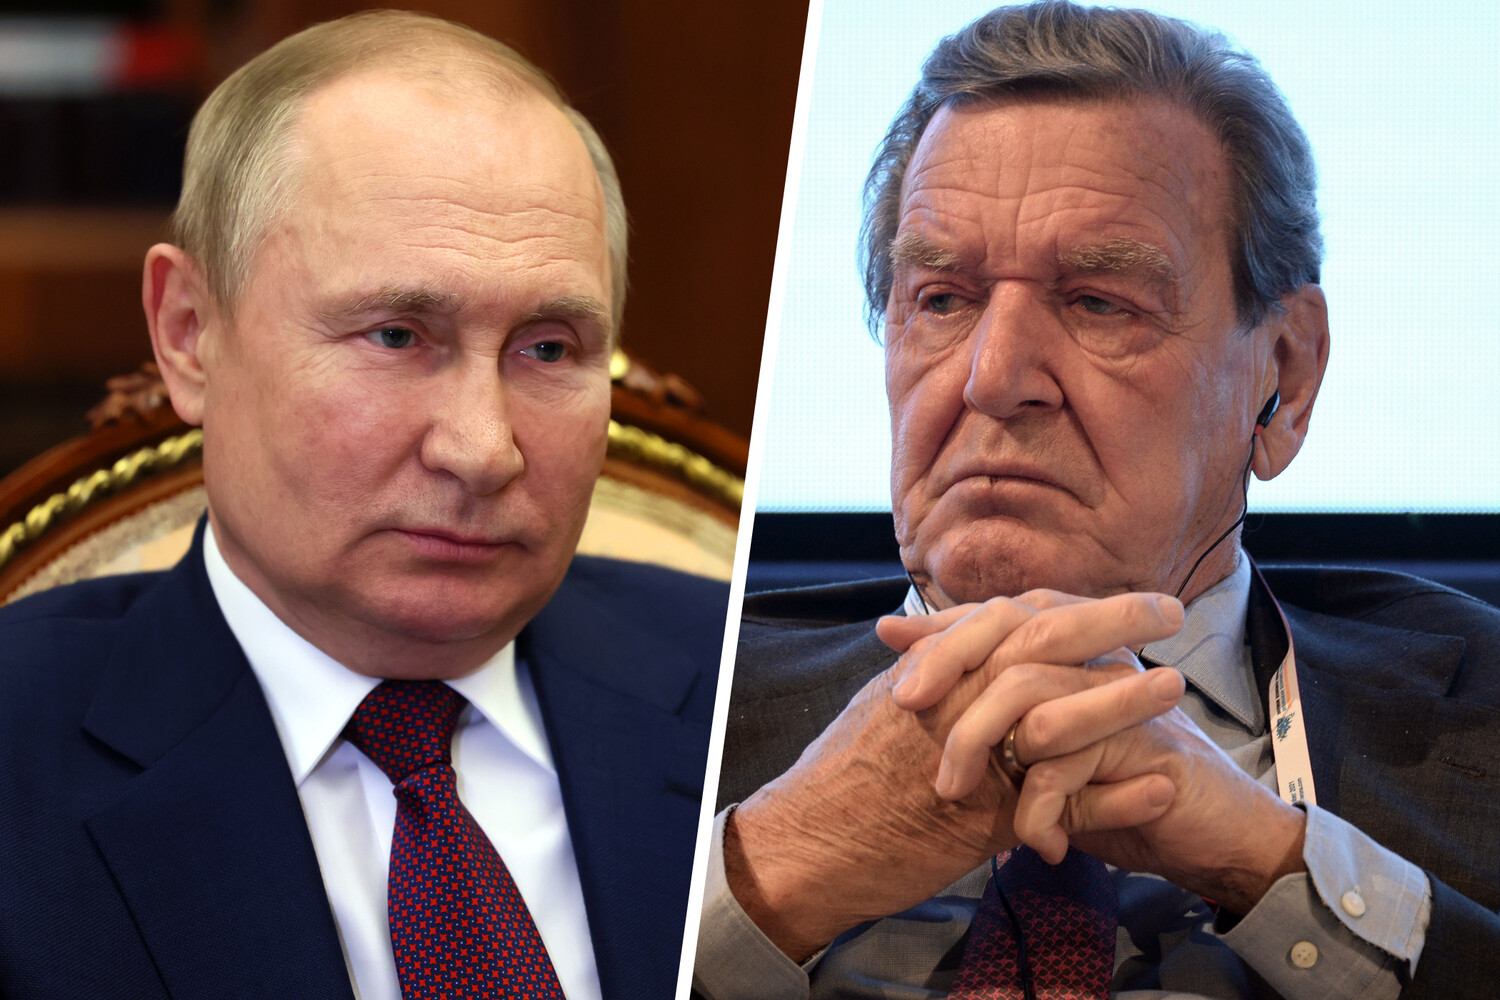 Однопартиец экс-канцлера ФРГ Шредера стыдится его из-за дружбы с Путиным